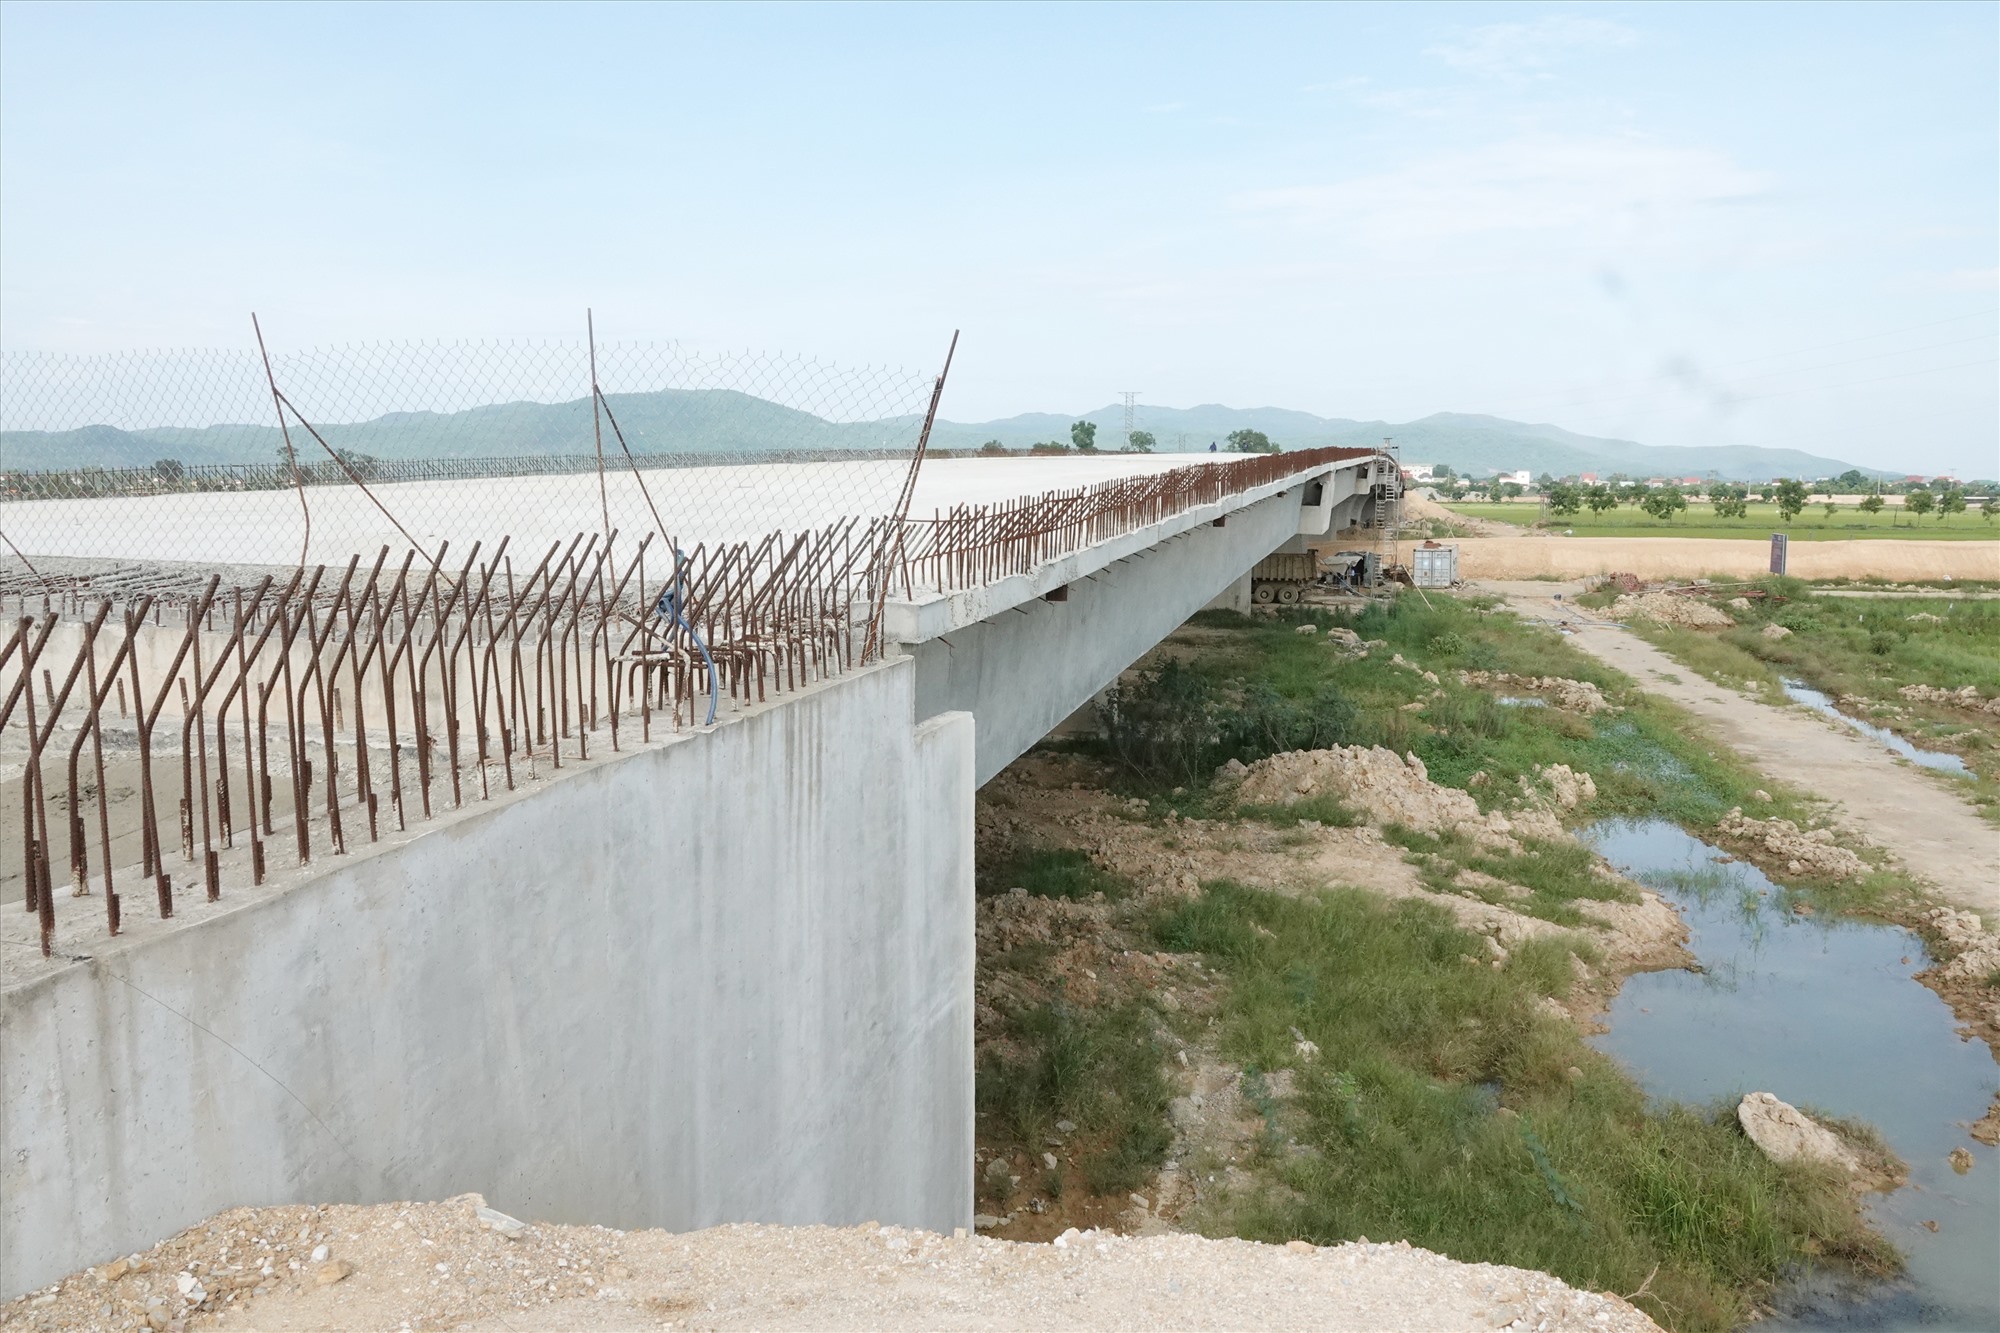 Cầu vượt cao tốc Bắc - Nam đoạn Diễn Châu - Bãi Vọt trên tuyến quốc lộ 8 qua xã Thanh Bình Thịnh (Đức Thọ) đã gần hoàn thành. Ảnh: Trần Tuấn.